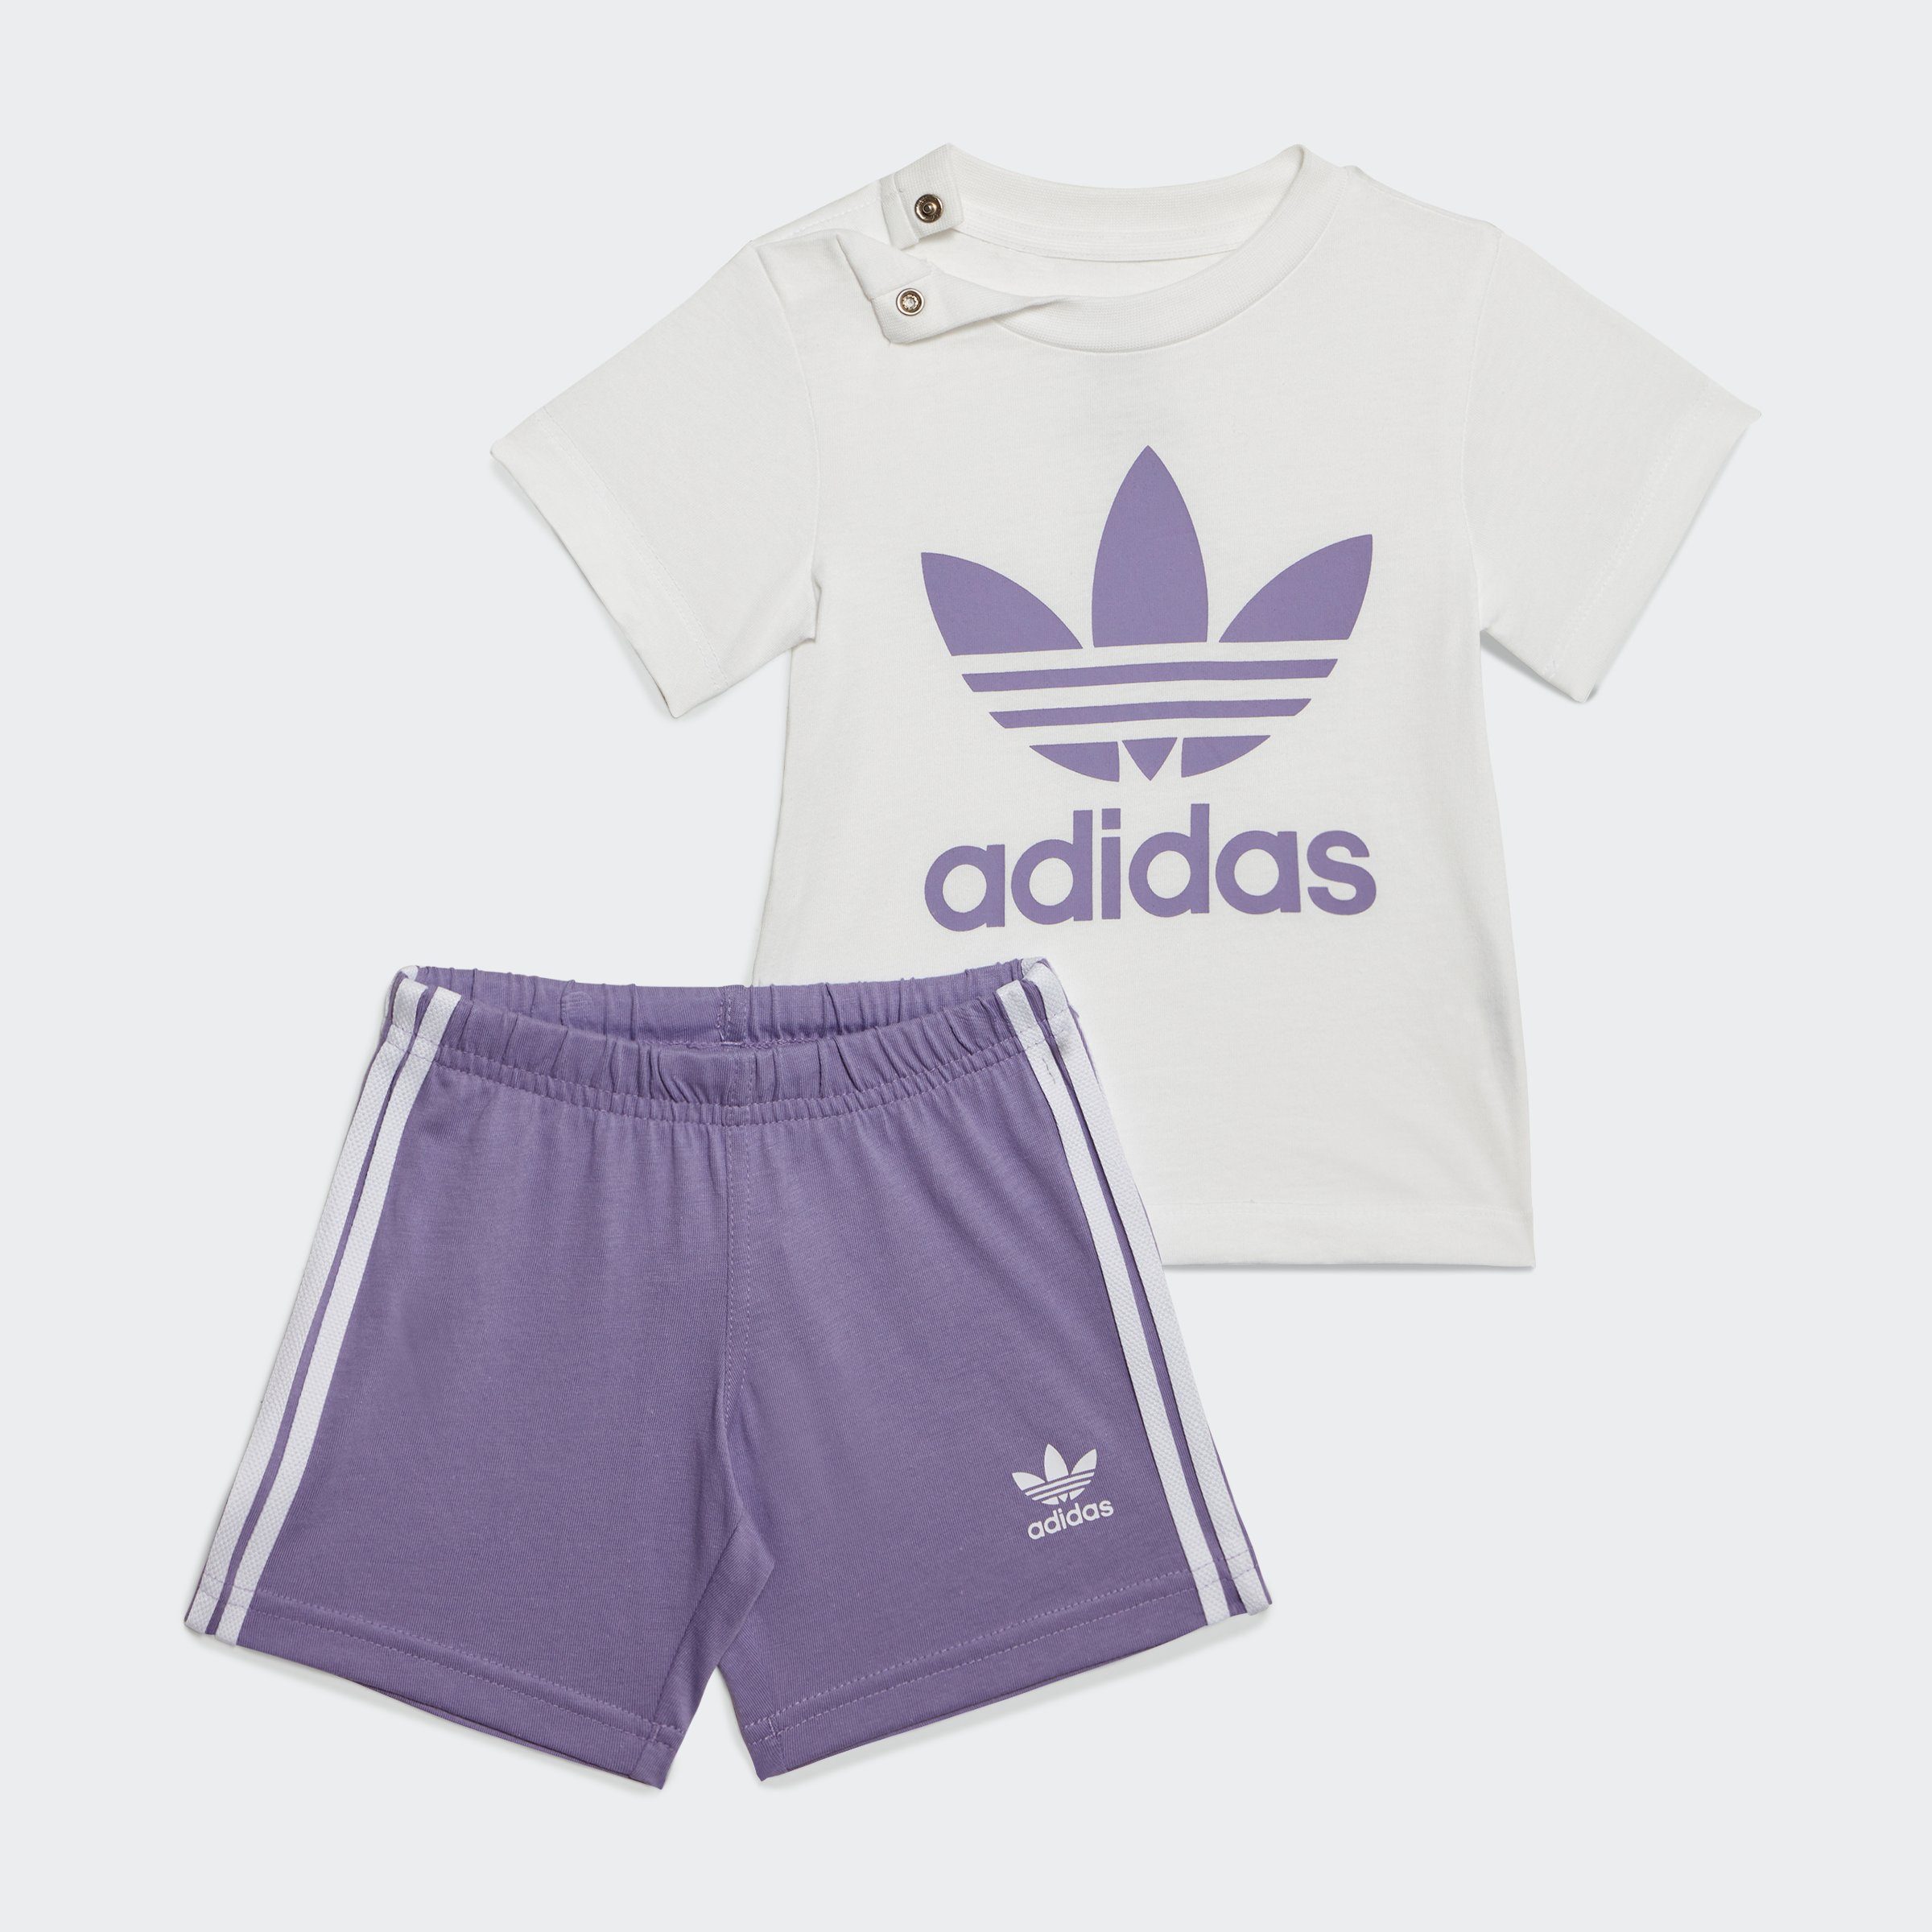 T-Shirt SHORTS Shorts & TREFOIL adidas UND Originals Magic Lilac SET (Set)